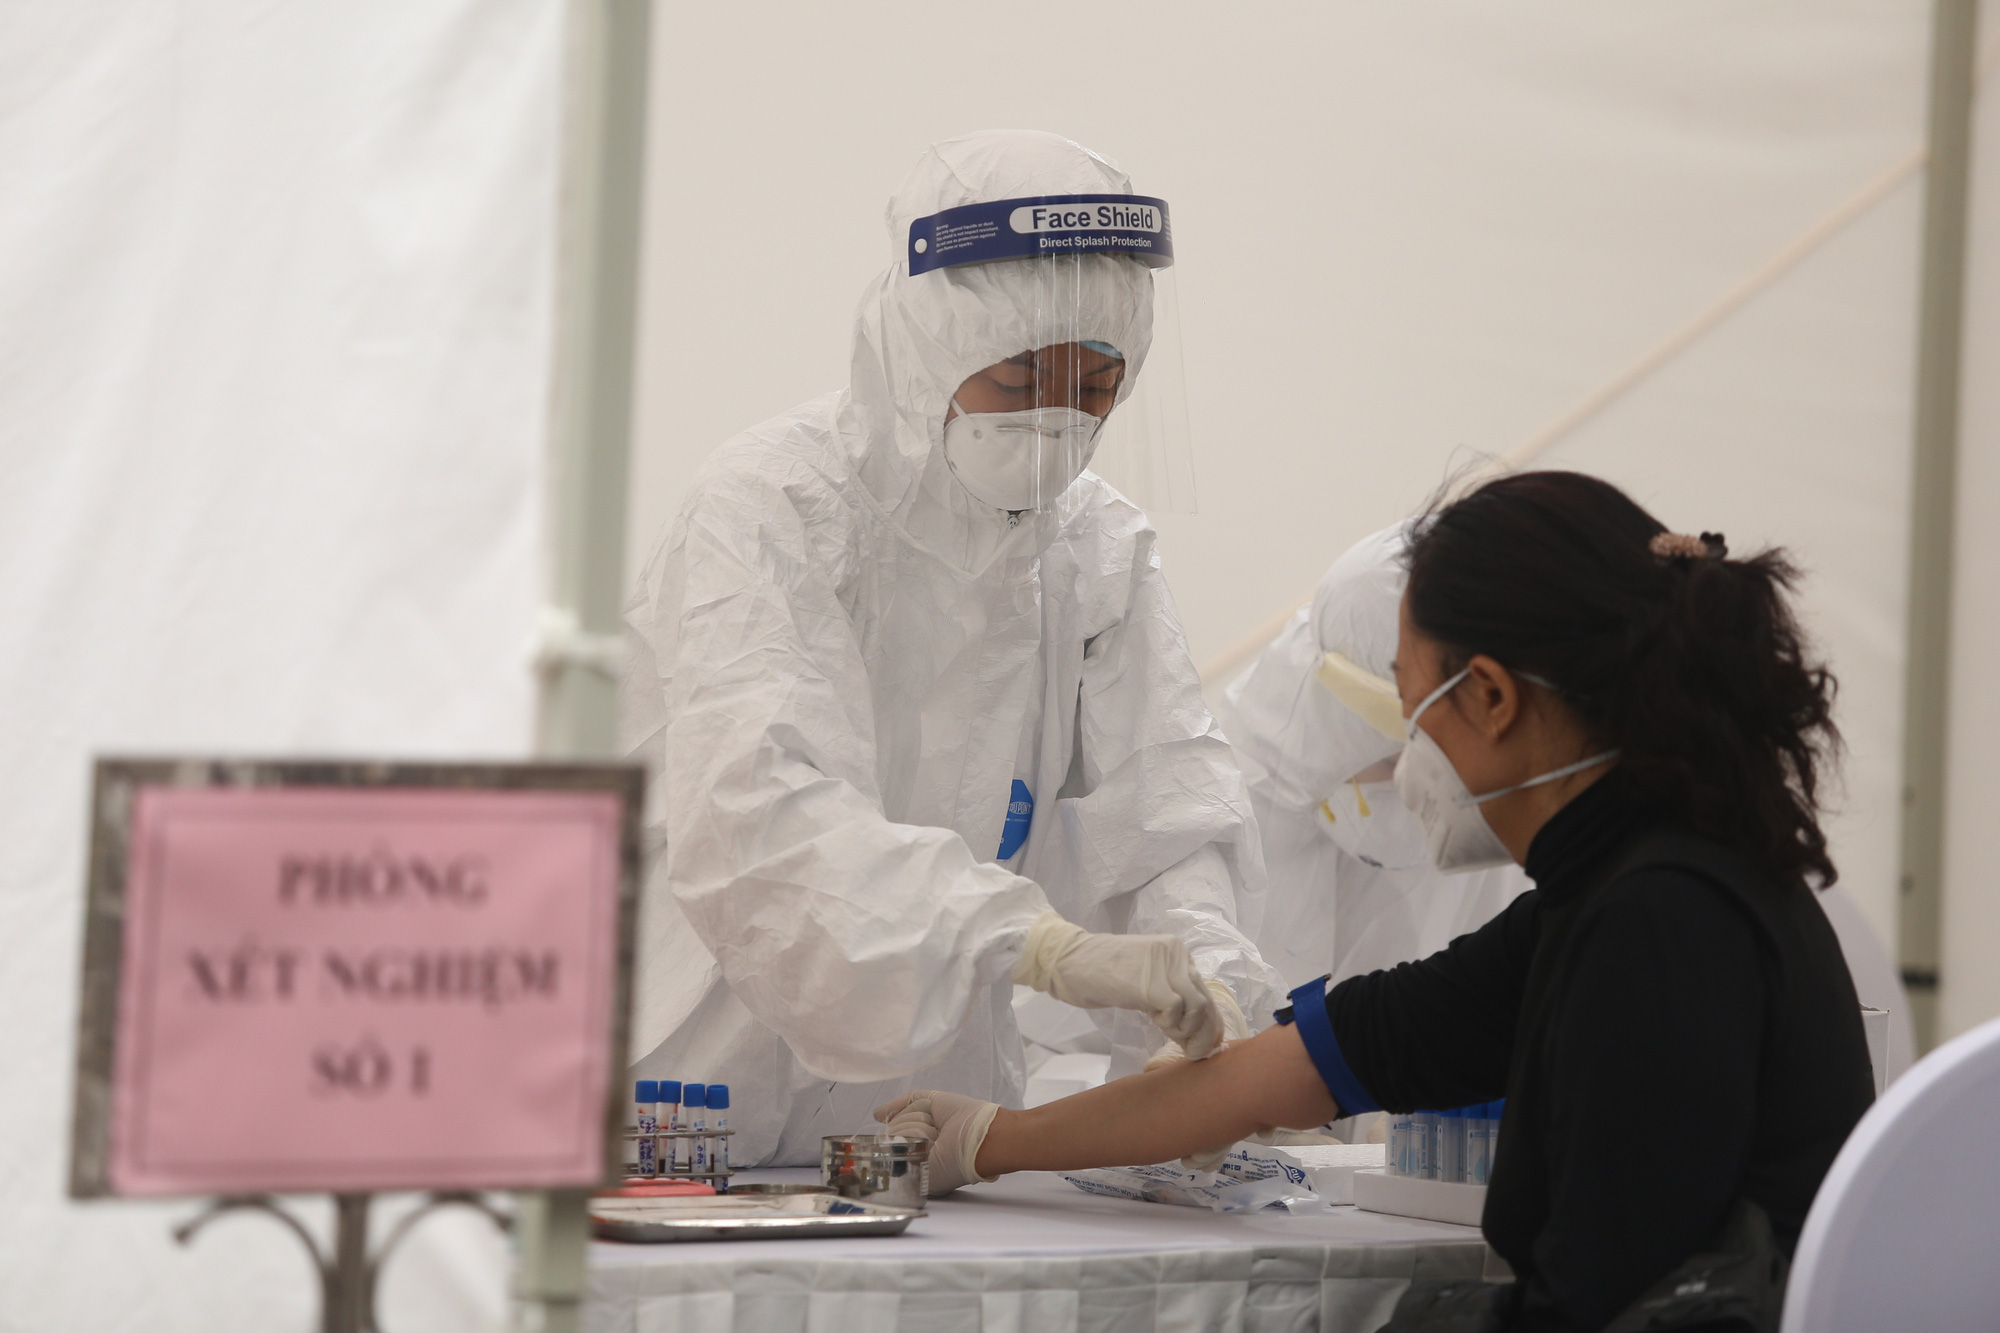 Chùm ảnh: Cận cảnh chốt lấy mẫu máu test Covid-19 xung quanh bệnh viện Bạch Mai - Ảnh 16.